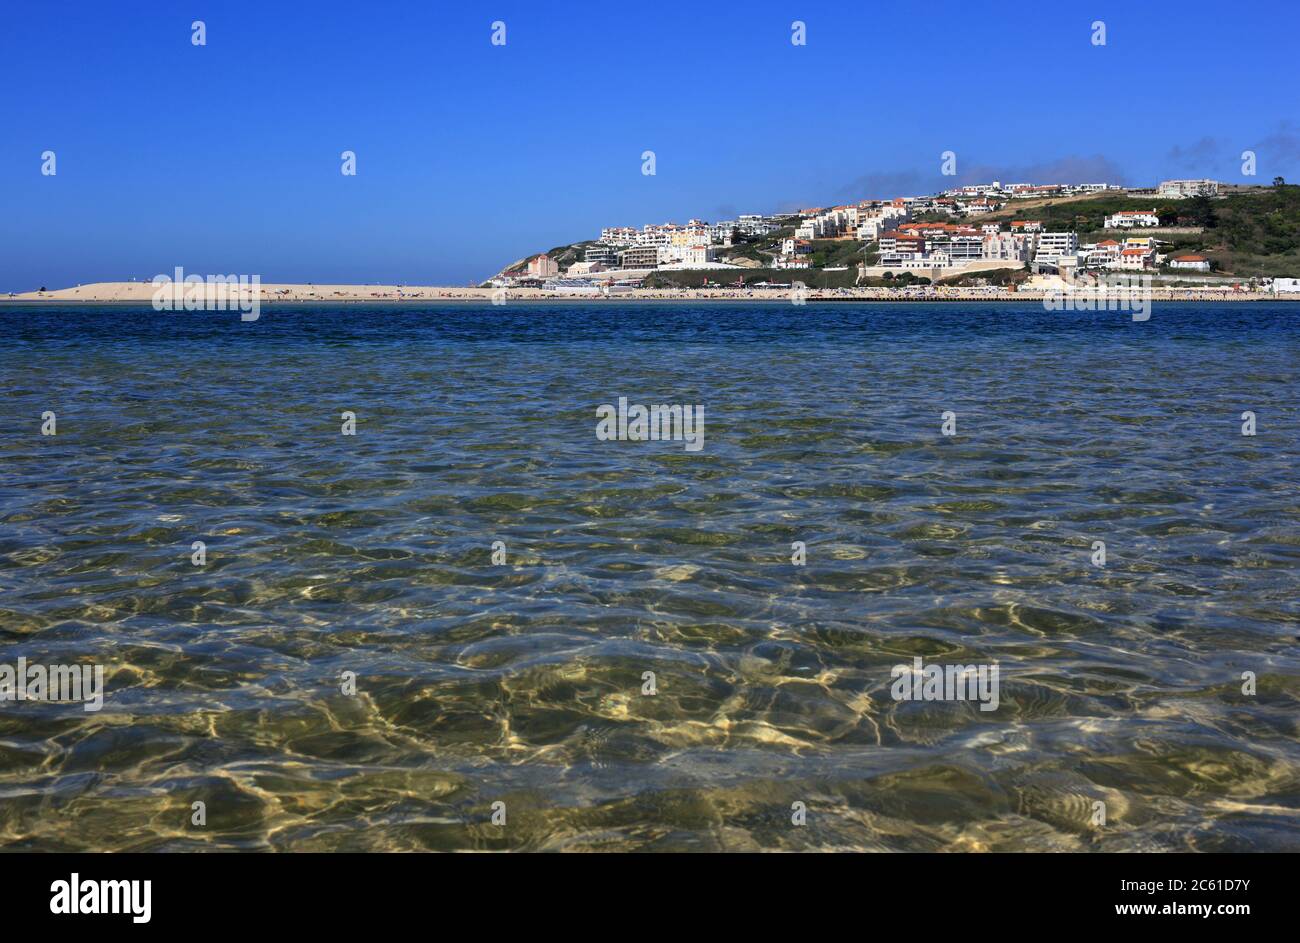 Il Portogallo, Caldas de Rainha, Lagoa de Obidos o Obidos laguna e la città di vacanze di Foz do Arelho. Acqua cristallina con la bassa marea. Foto Stock